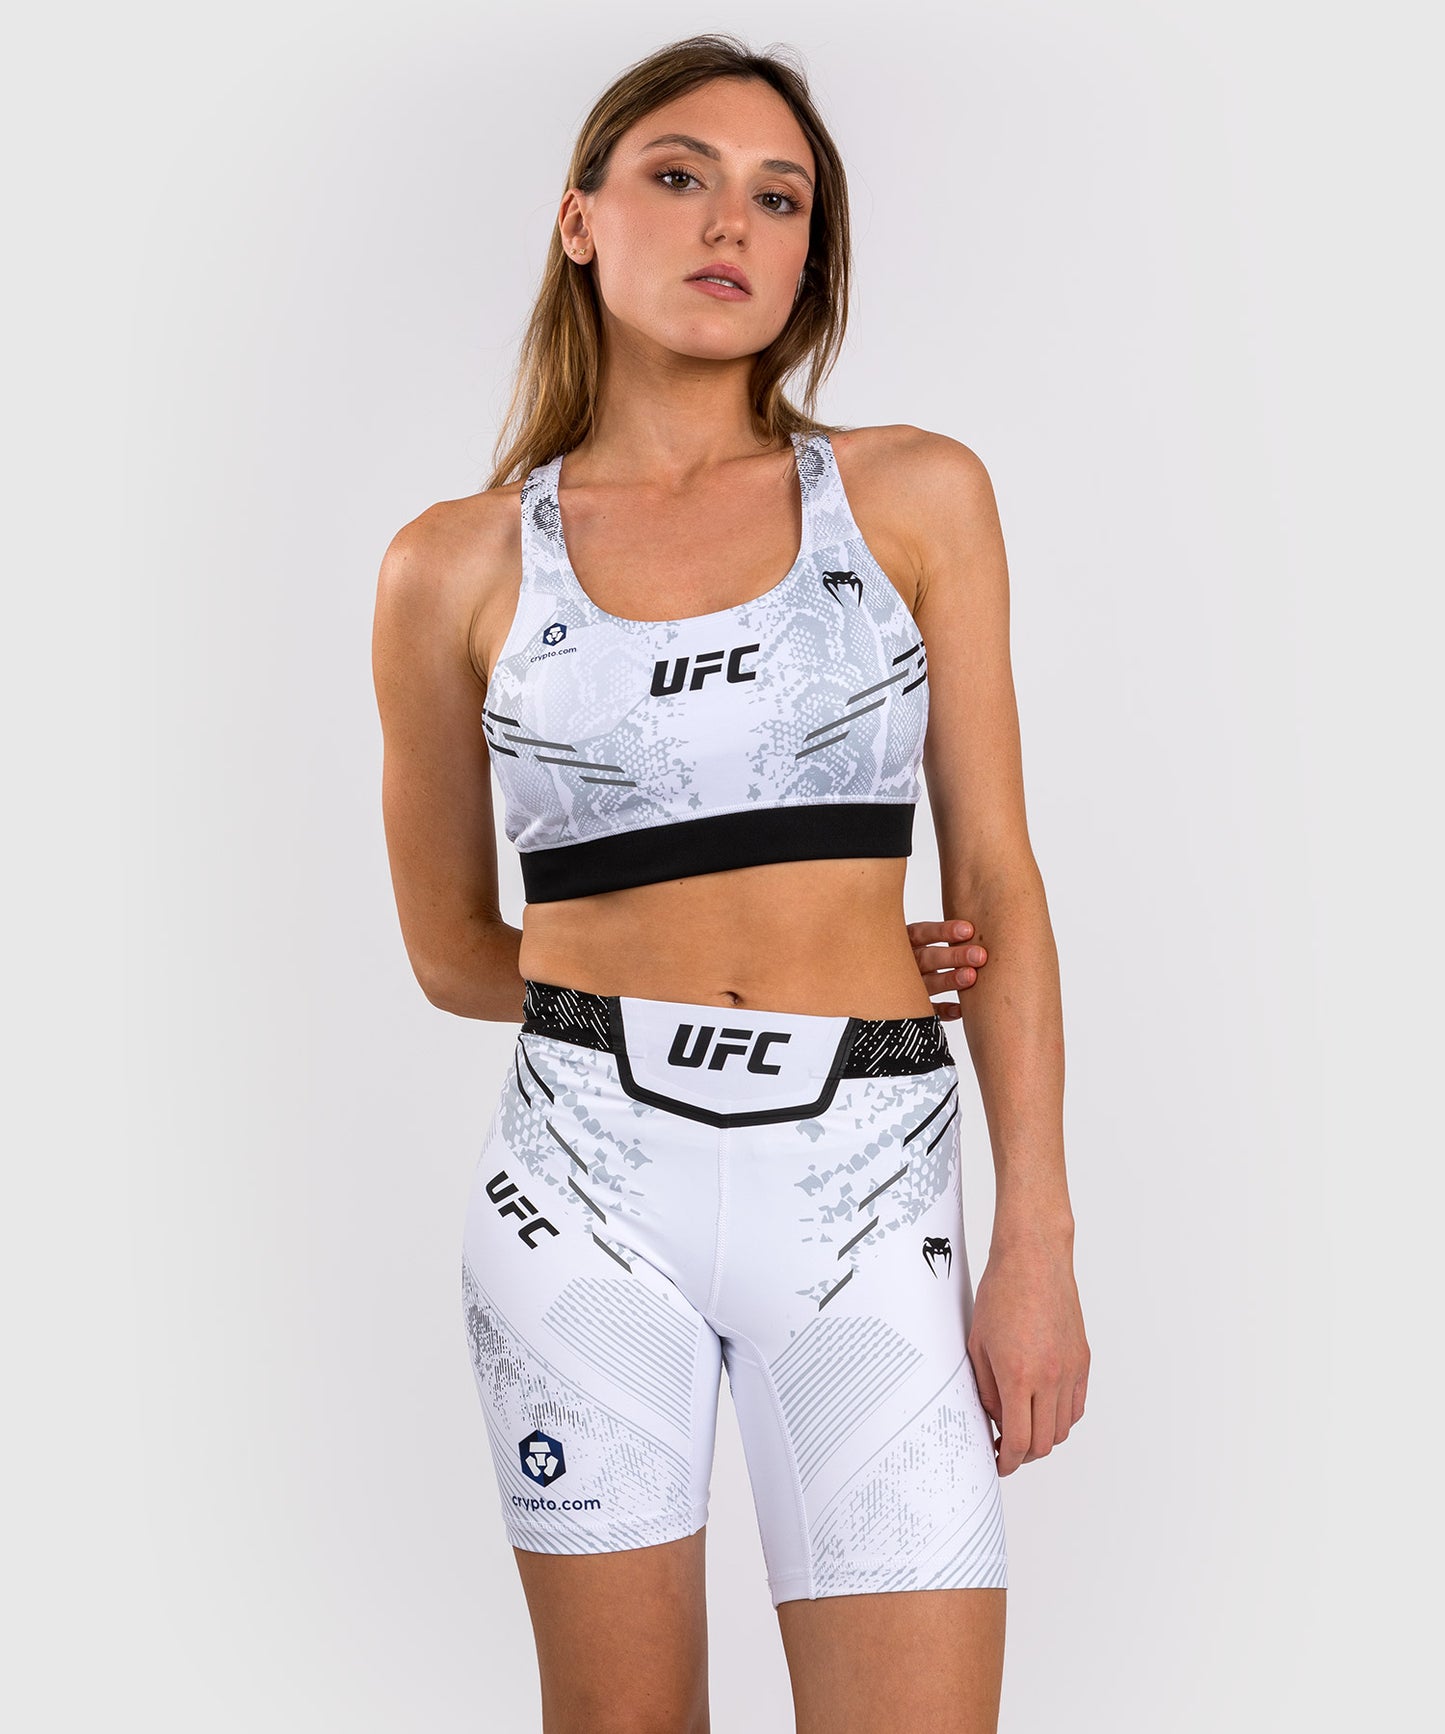 UFC Adrenaline by Venum Authentic Fight Night Vale Tudo Short für Frauen - Lange Passform - Weiß